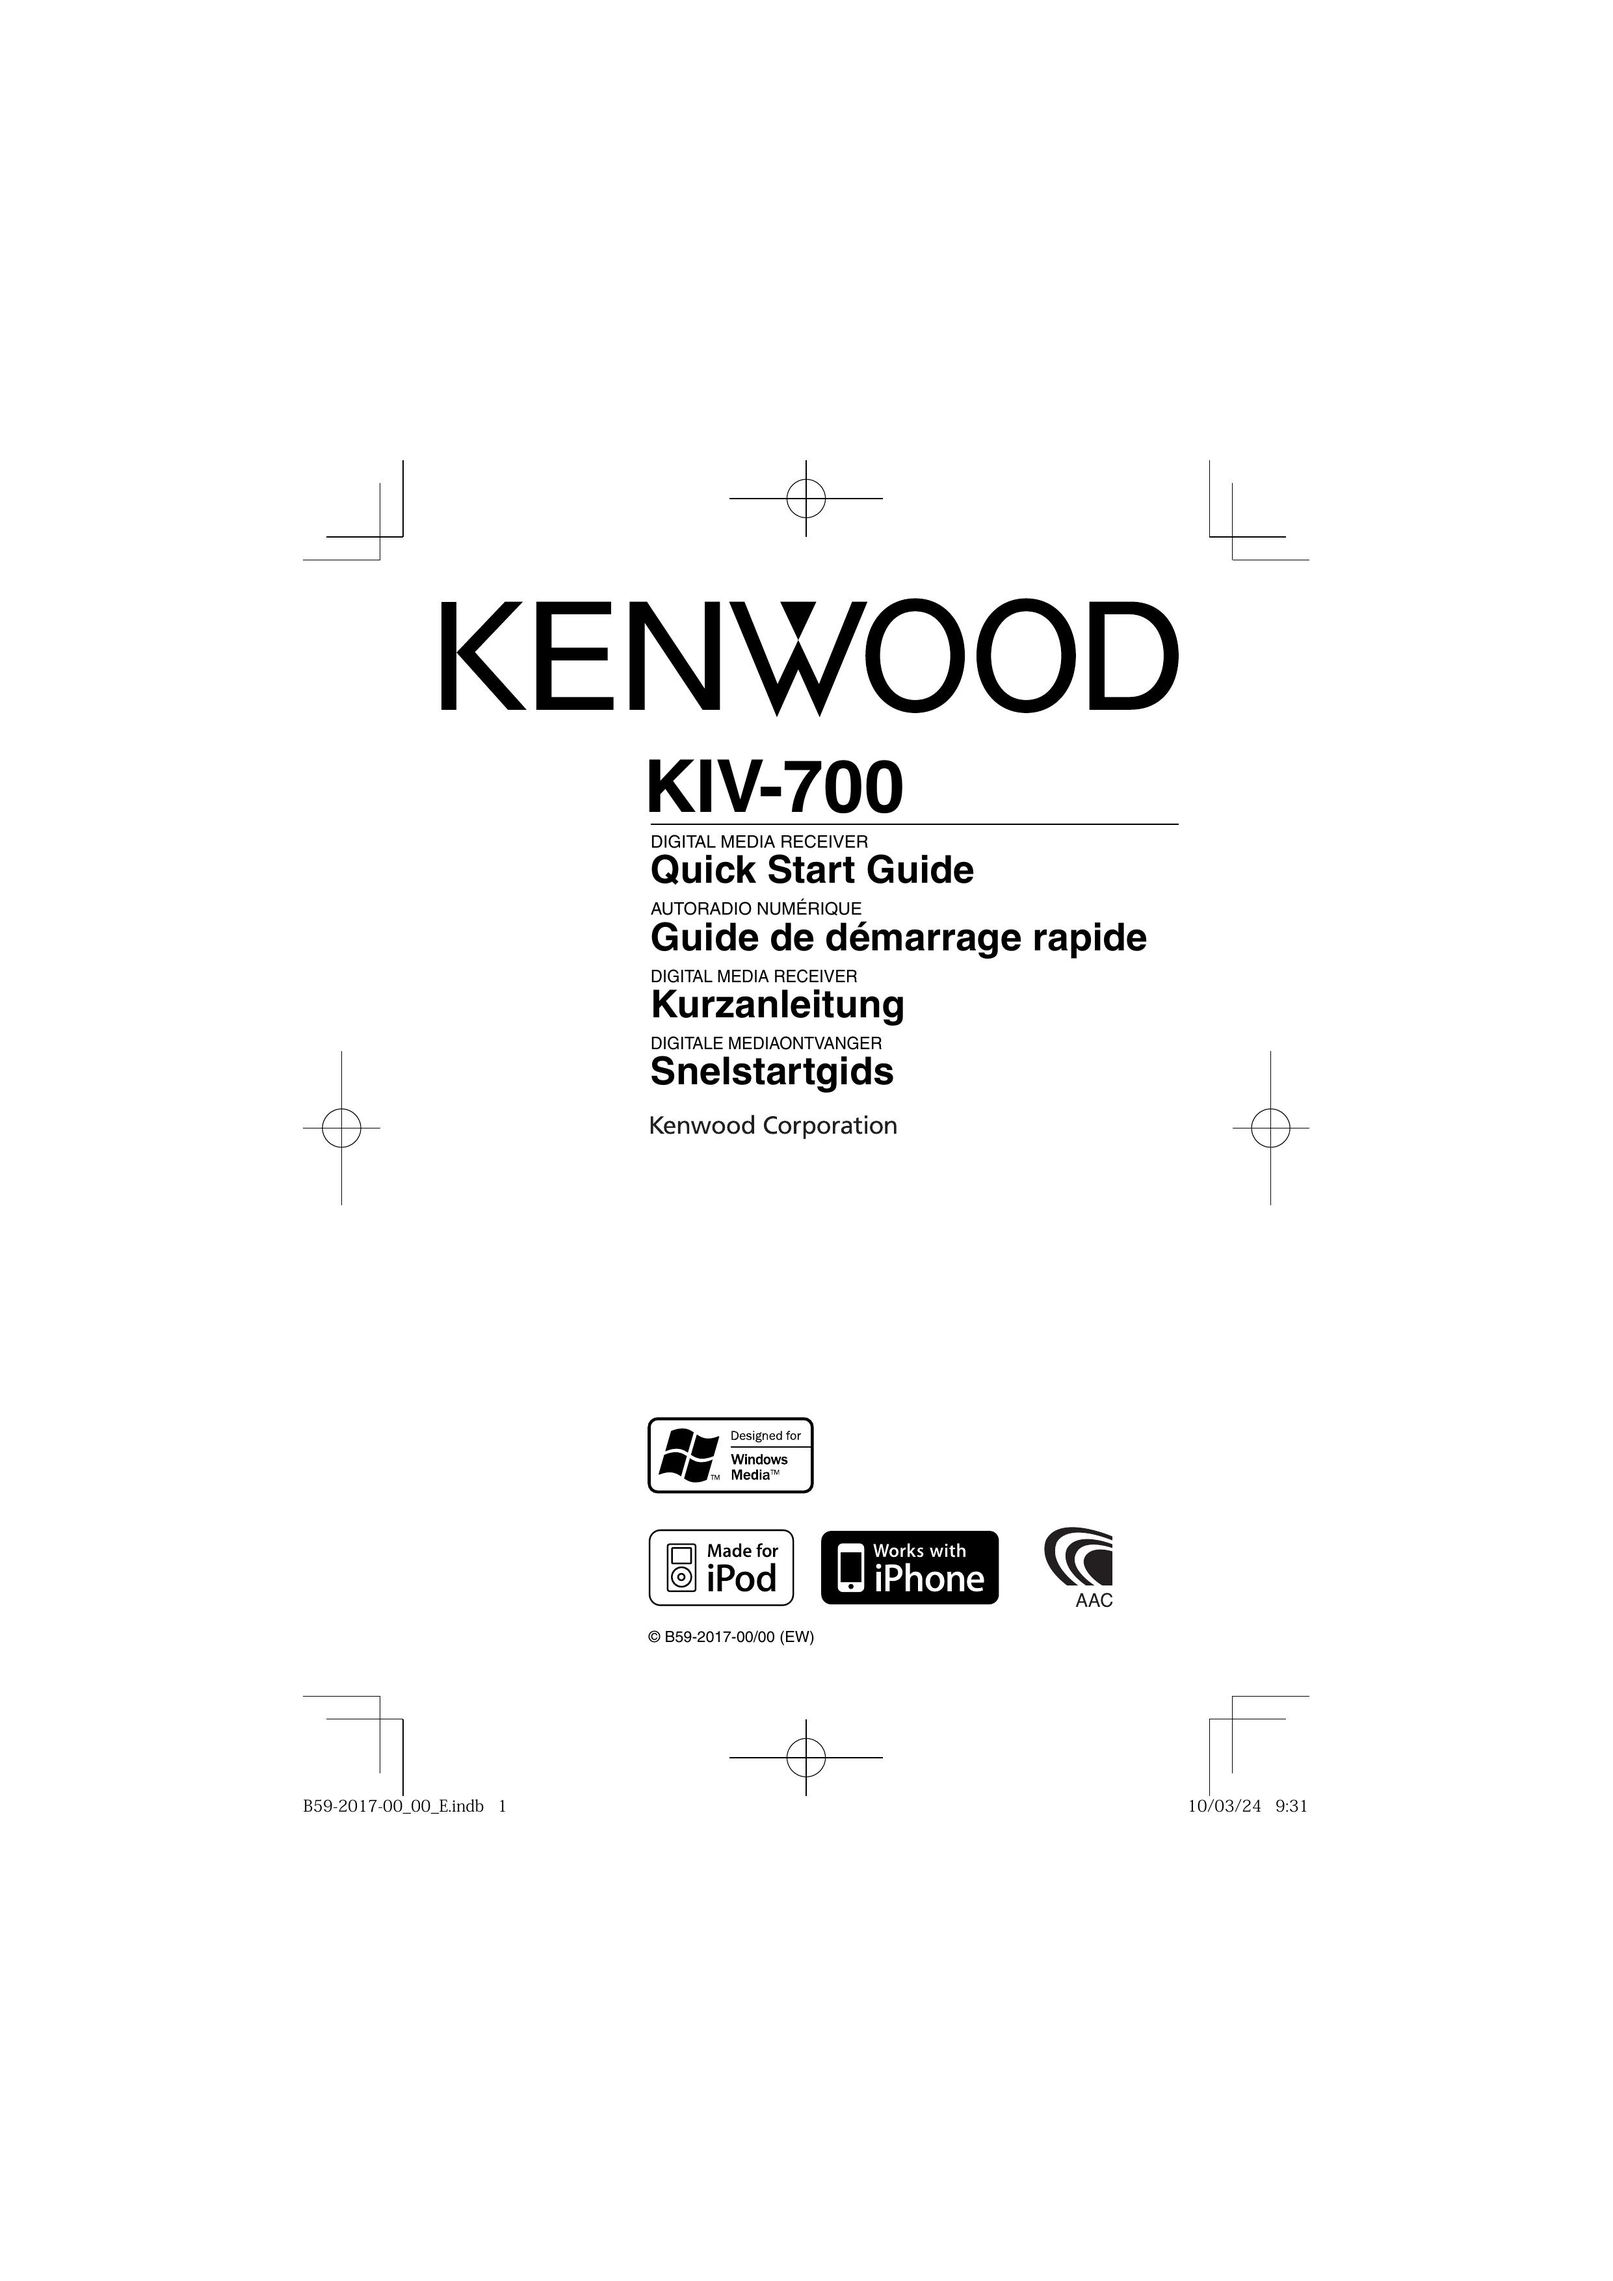 Kenwood KIV-700 Car Satellite TV System User Manual